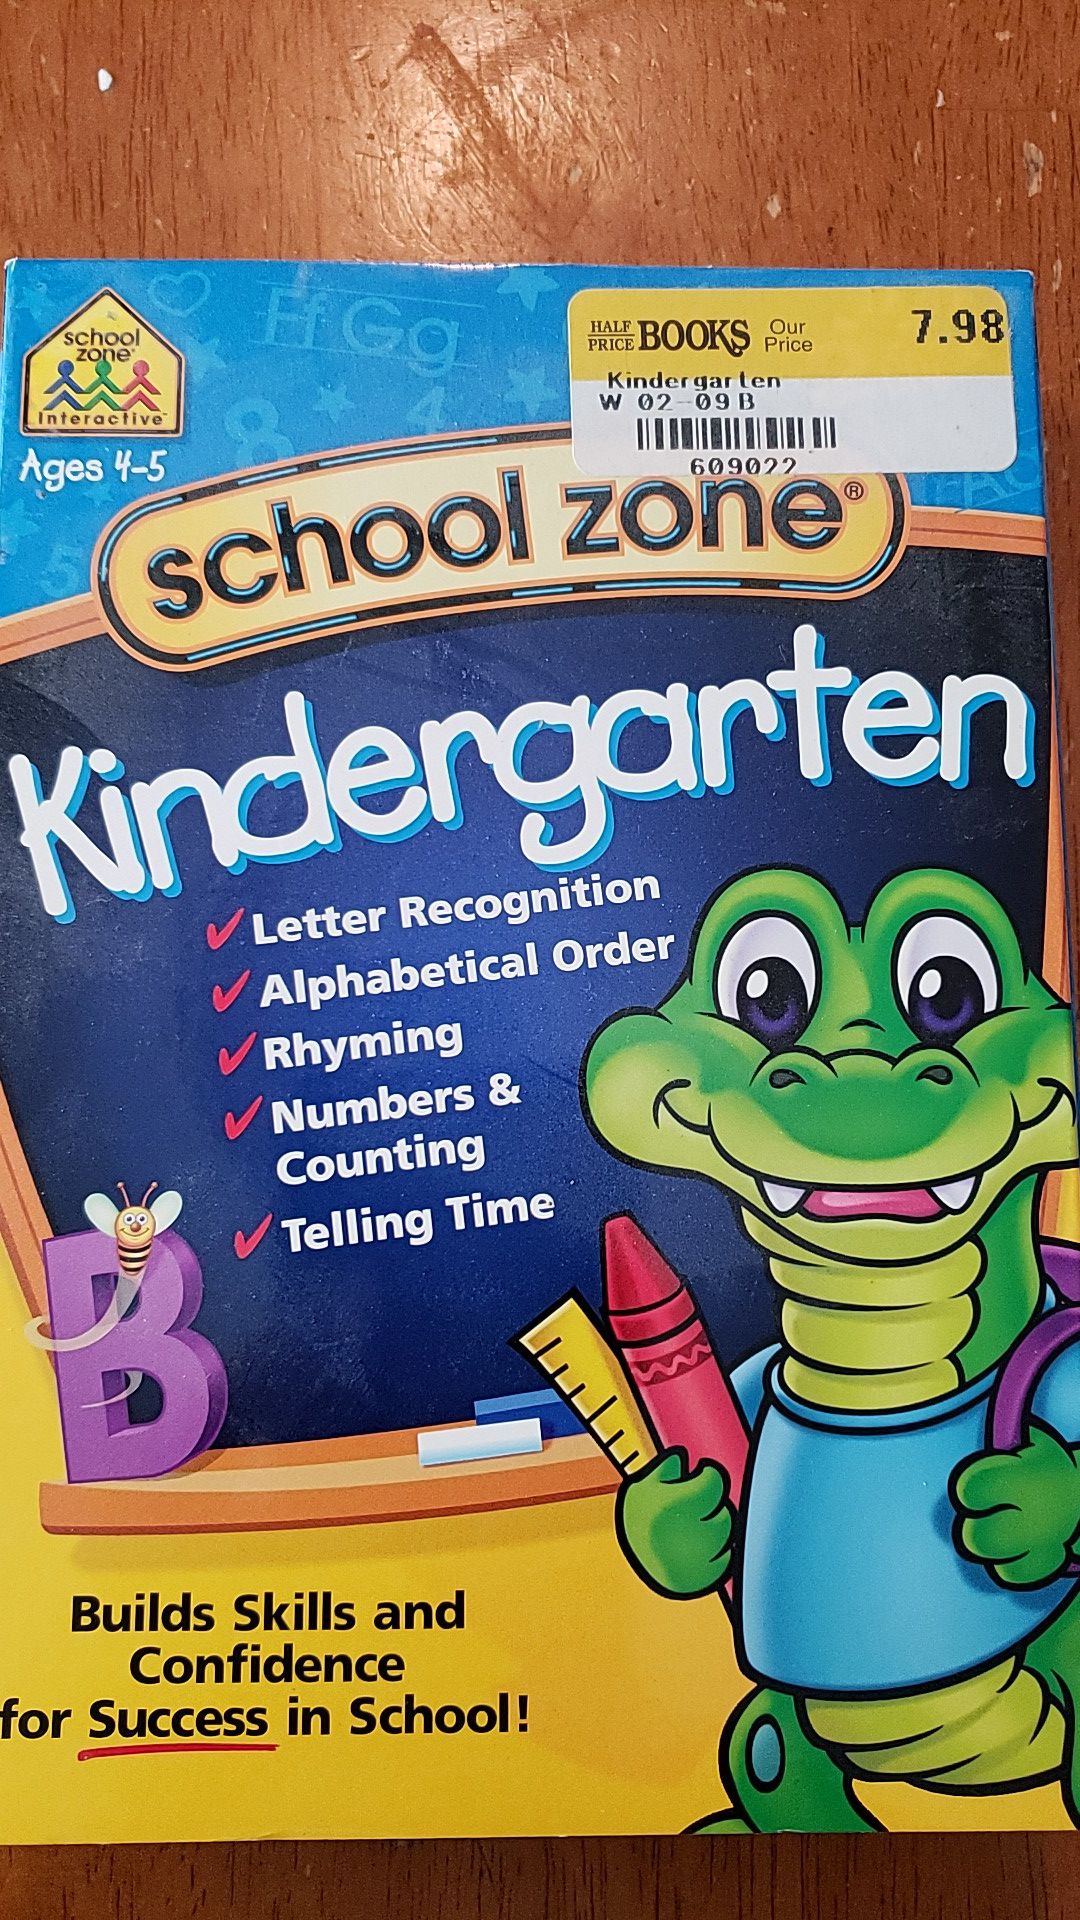 School Zone Kindergarten computer program, 2 CD set, never opened